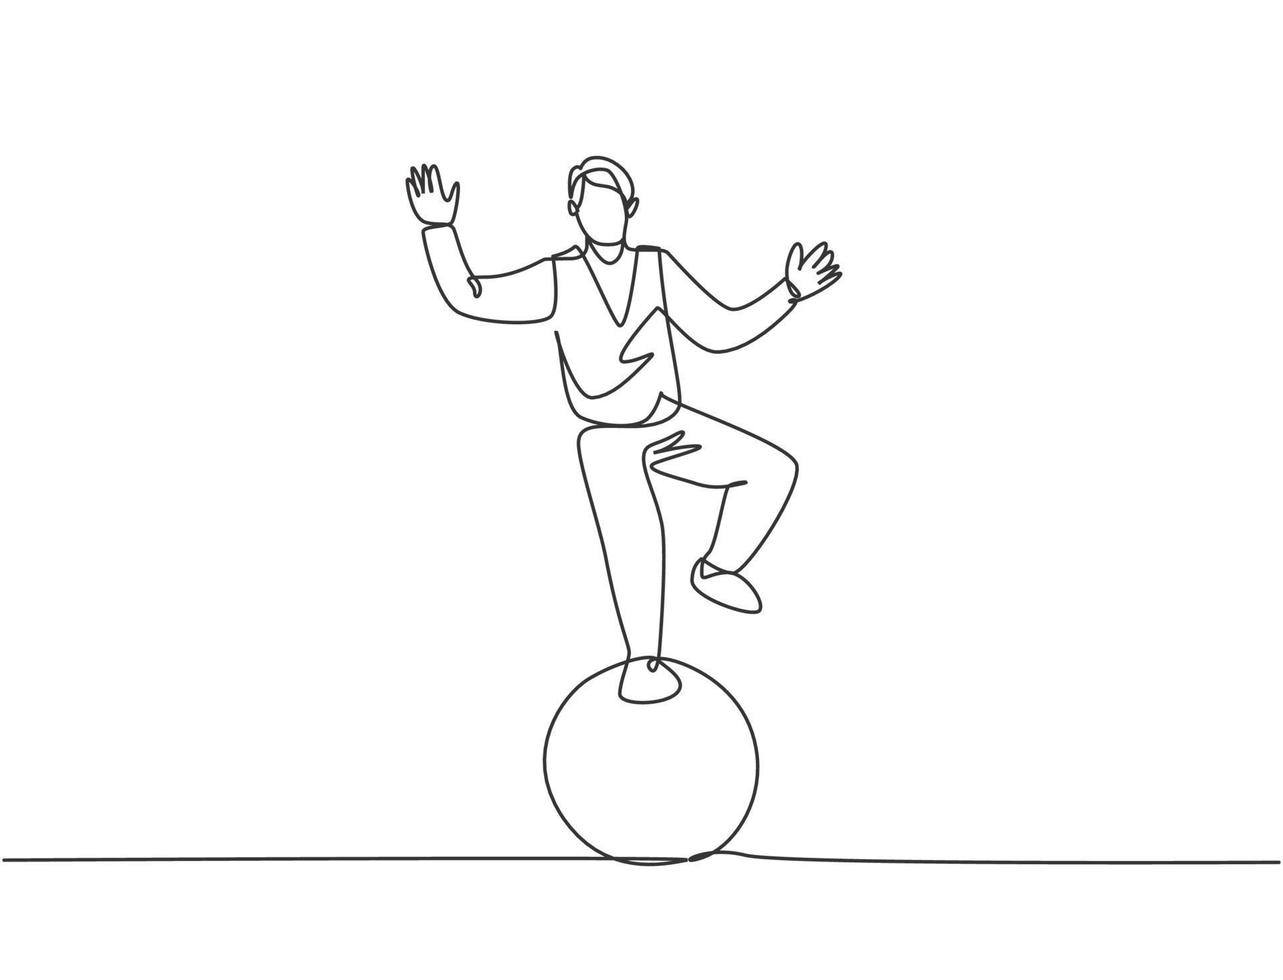 continue één lijntekening een mannelijke acrobaat voert een staande stunt uit met één voet op een circusbal tijdens het uitvoeren van een dans. interessant voor het publiek. enkele lijn tekenen ontwerp vectorillustratie. vector